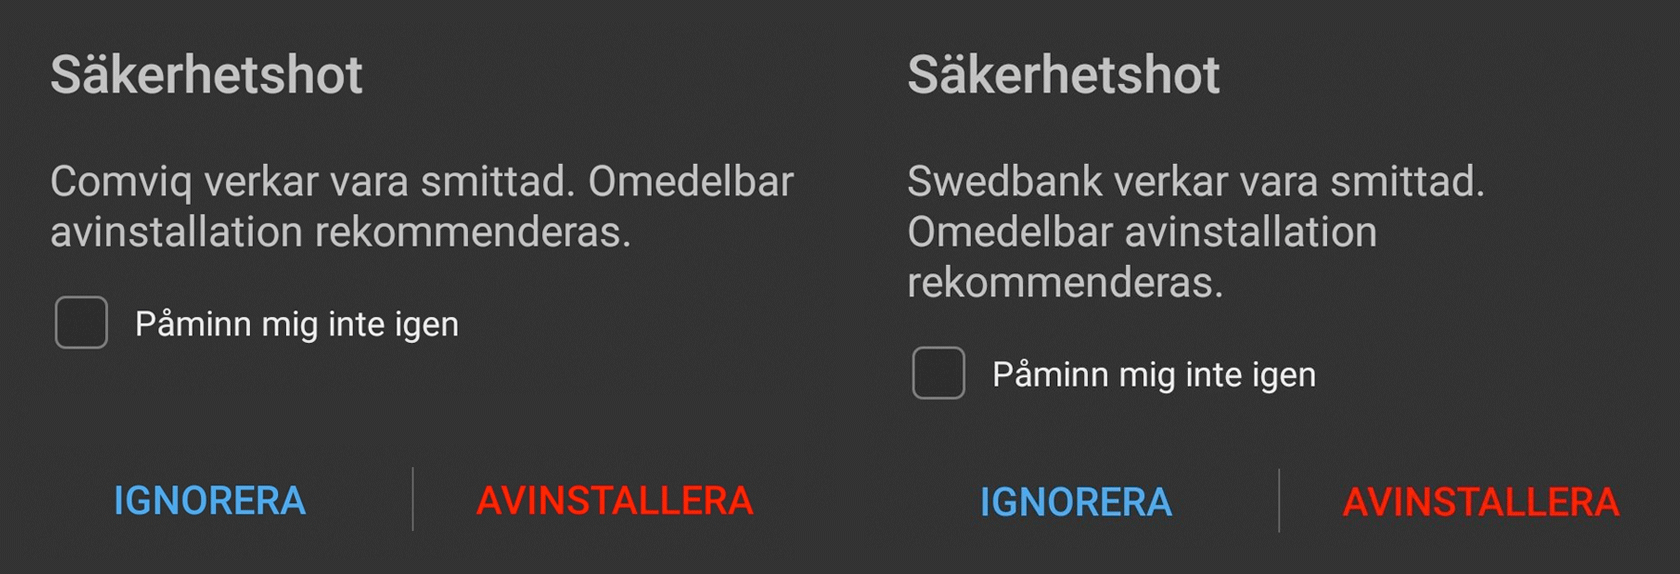 Varningsnotiser med texterna ”Comviq verkar vara smittad, omedelbar avinstallation rekommenderas” och ”Swedbank verkar vara smittad, omedelbar avinstallation rekommenderas”. 